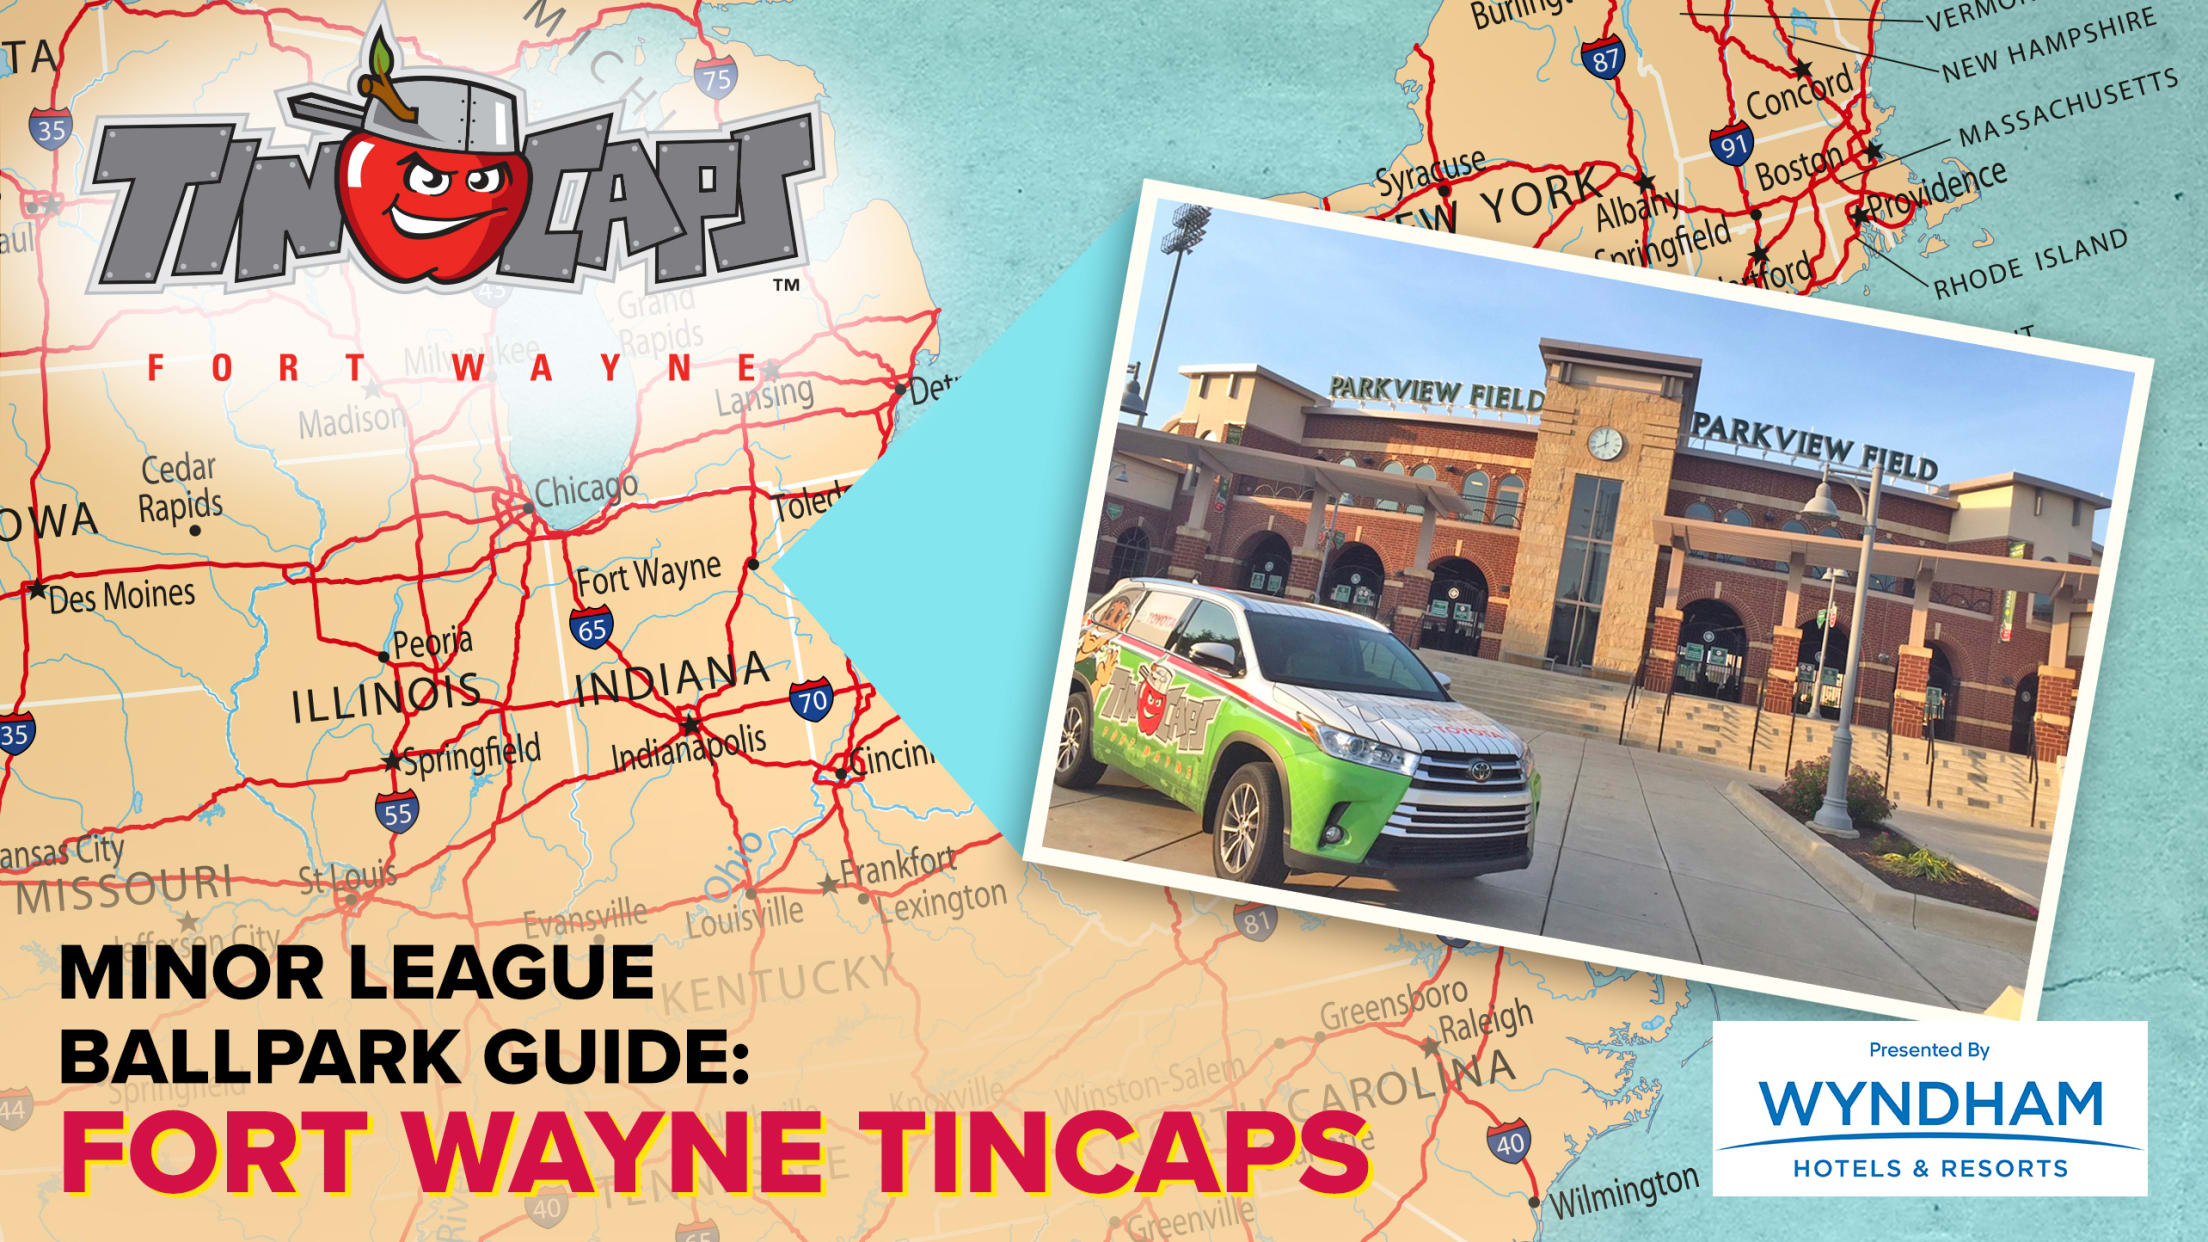 2568x1445-Stadium_Map_Fort_Wayne_TinCaps